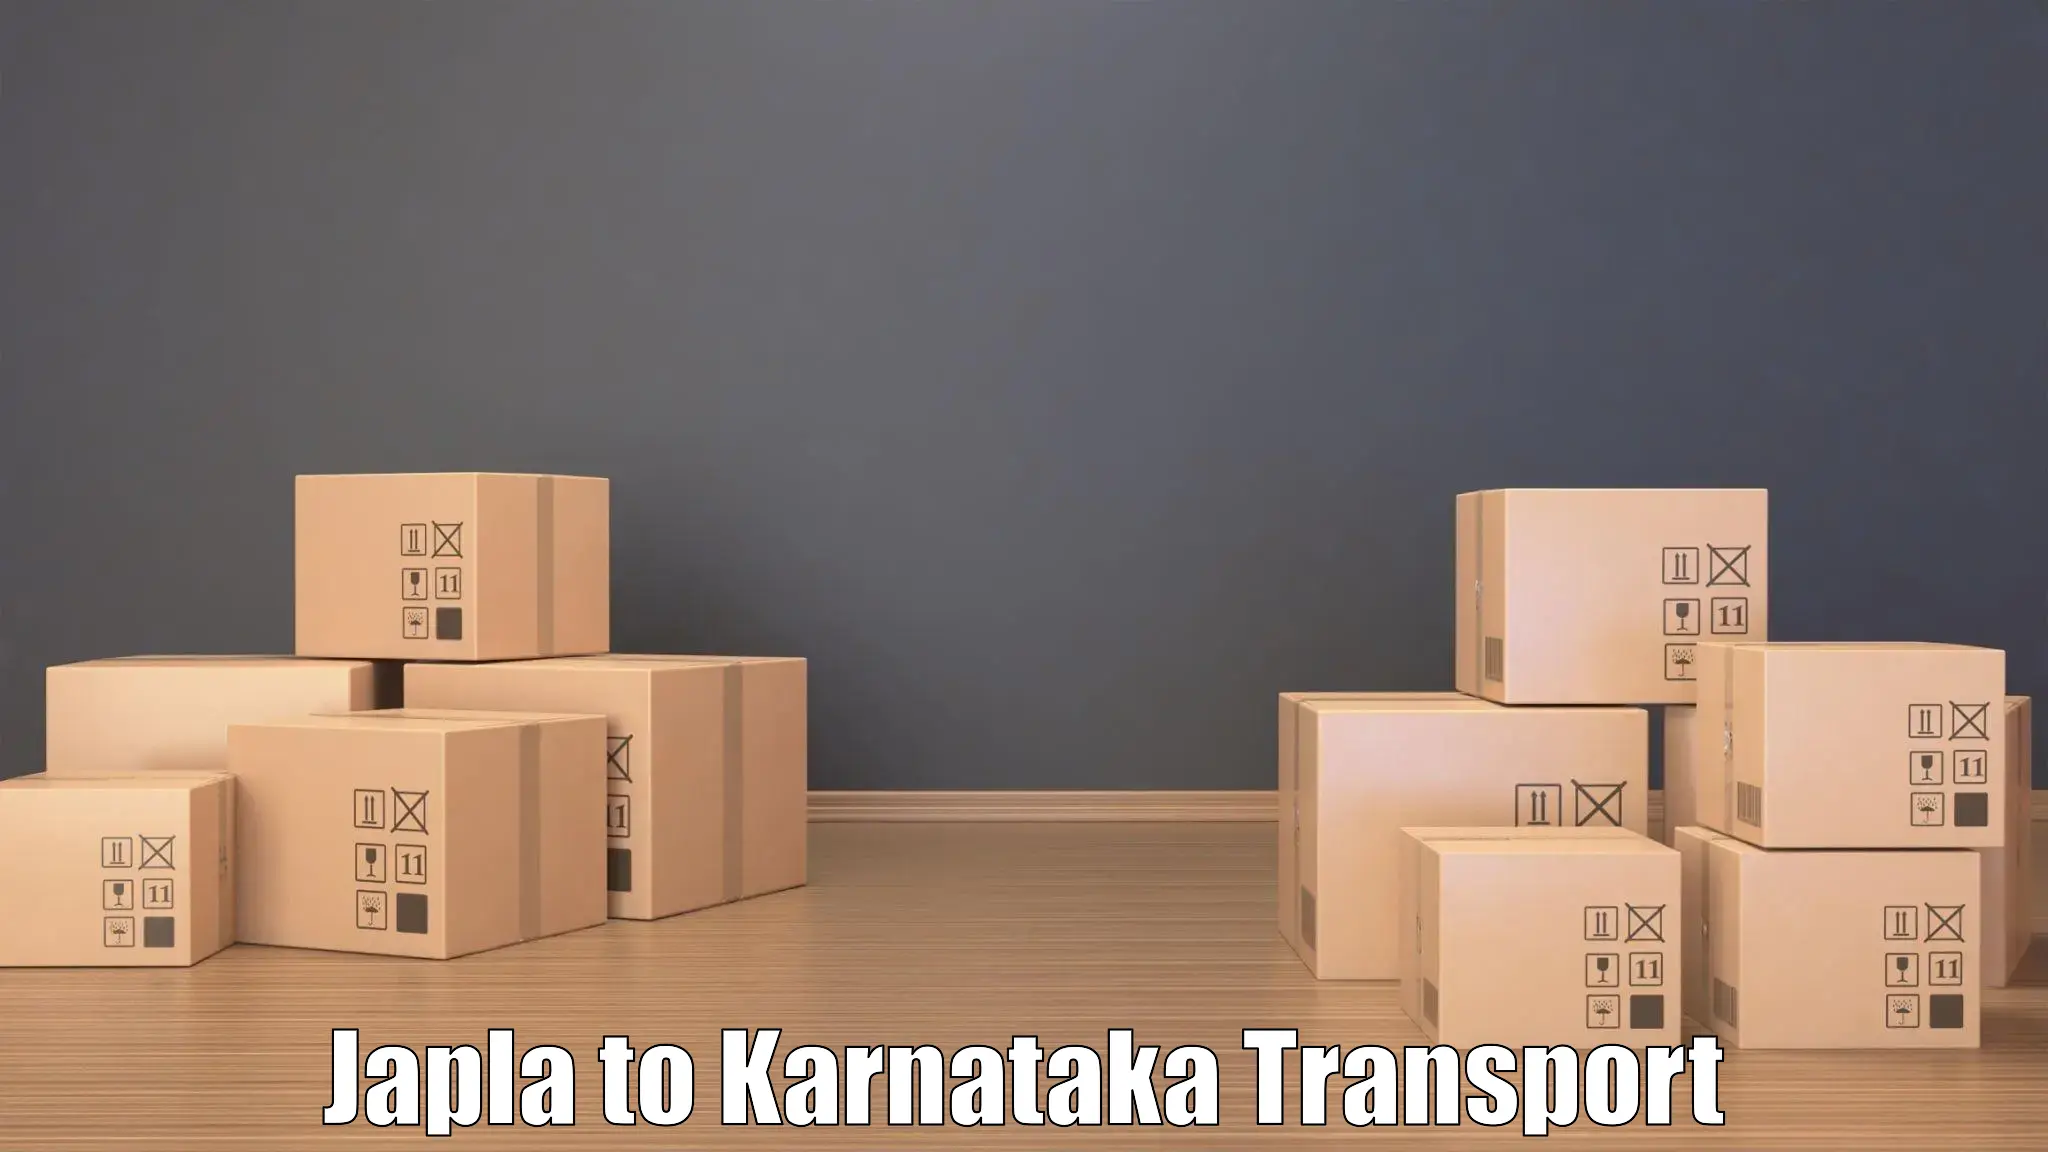 Nearest transport service Japla to Doddaballapura